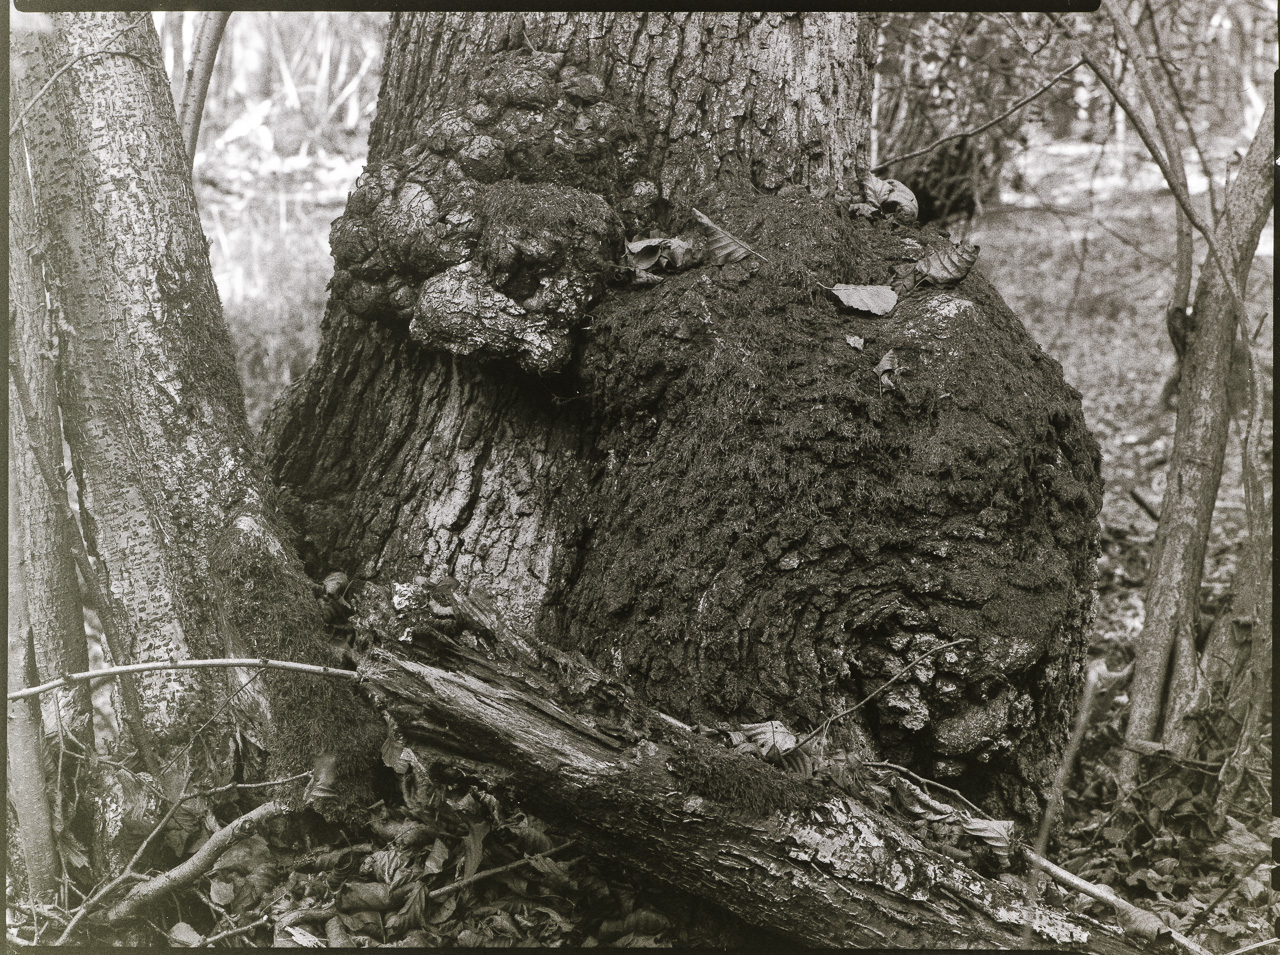 SchwarzWeißBild: Am Stamm einer Eiche eine Wucherung, die aussieht wie ein BärenJunges, das sich an den Stamm klammert